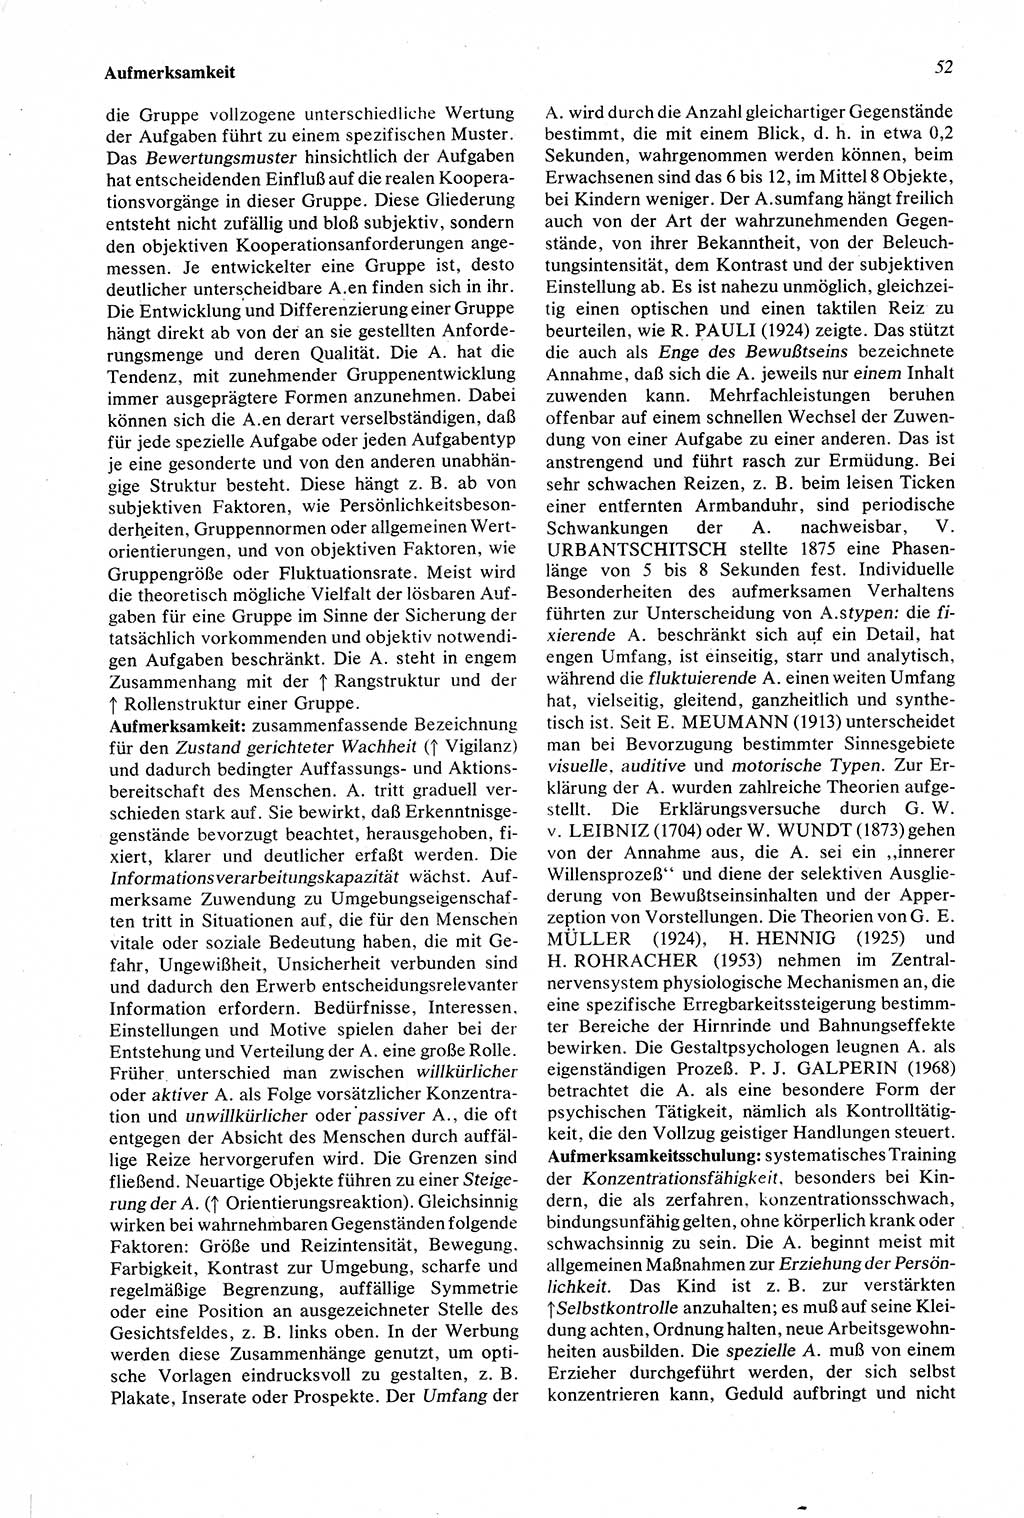 Wörterbuch der Psychologie [Deutsche Demokratische Republik (DDR)] 1976, Seite 52 (Wb. Psych. DDR 1976, S. 52)